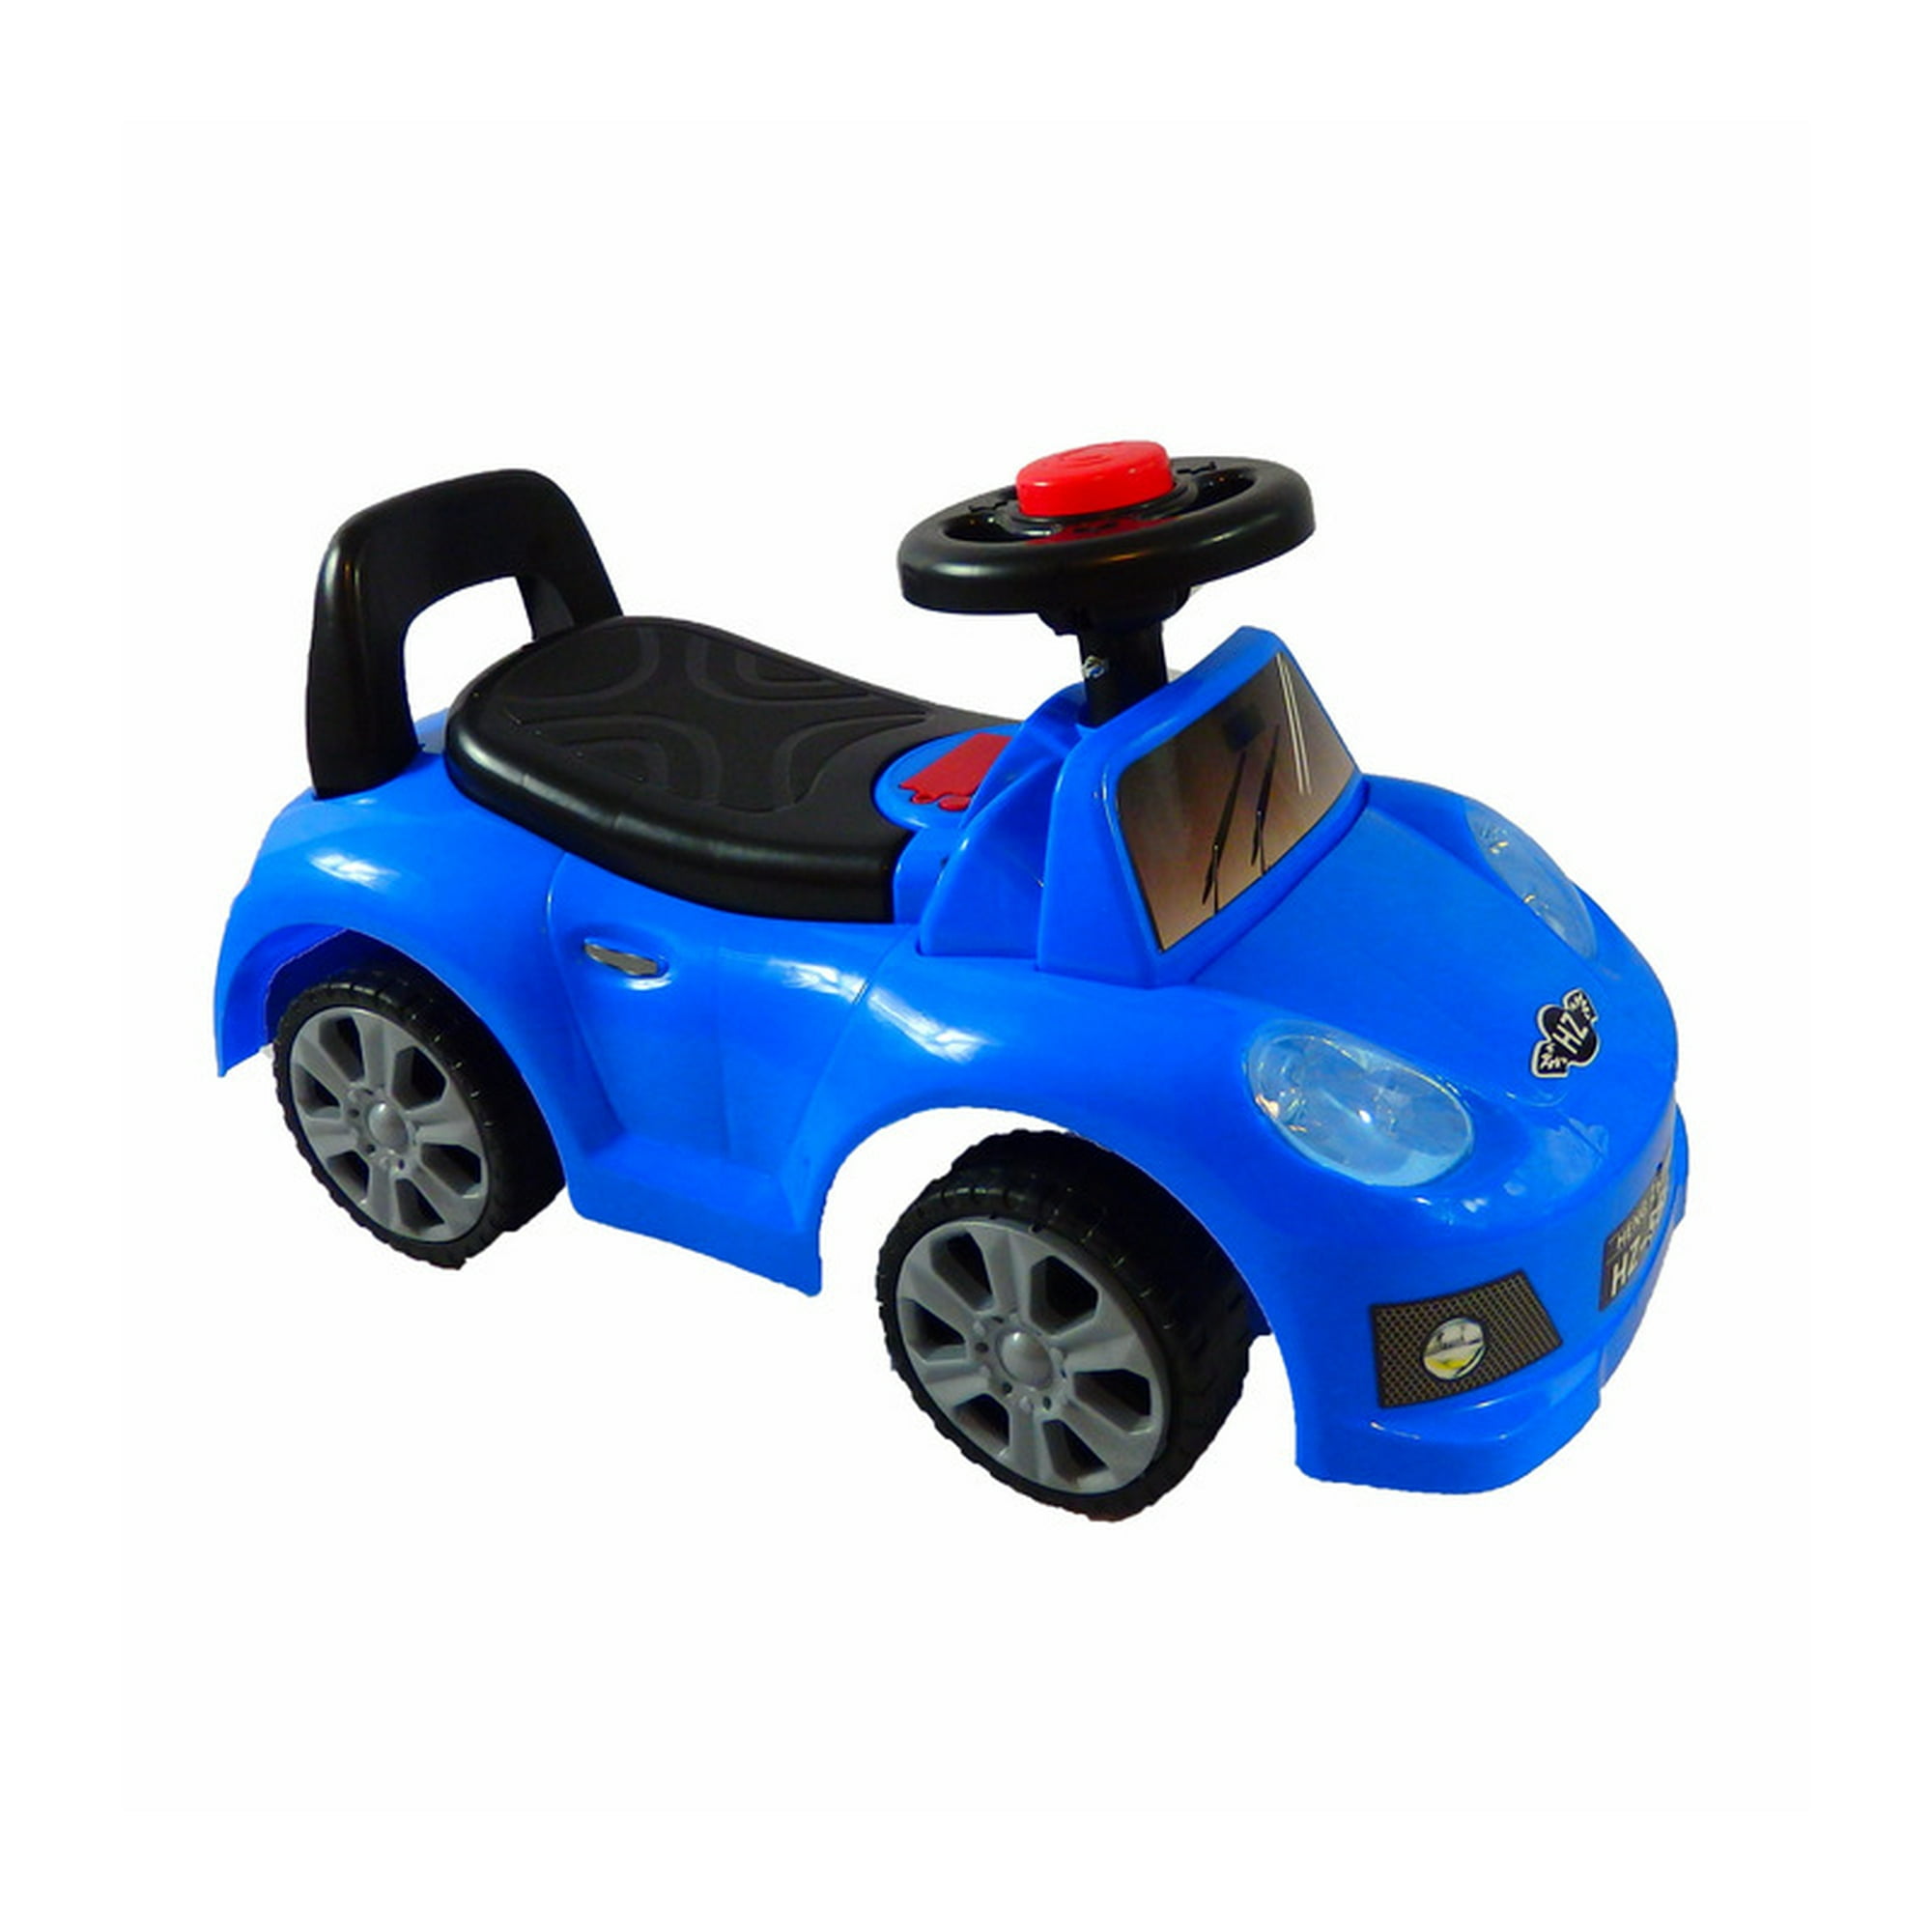 Go Kart a Pedales The Baby Shop - EBPMONT04 con llantas de aire Rojo 